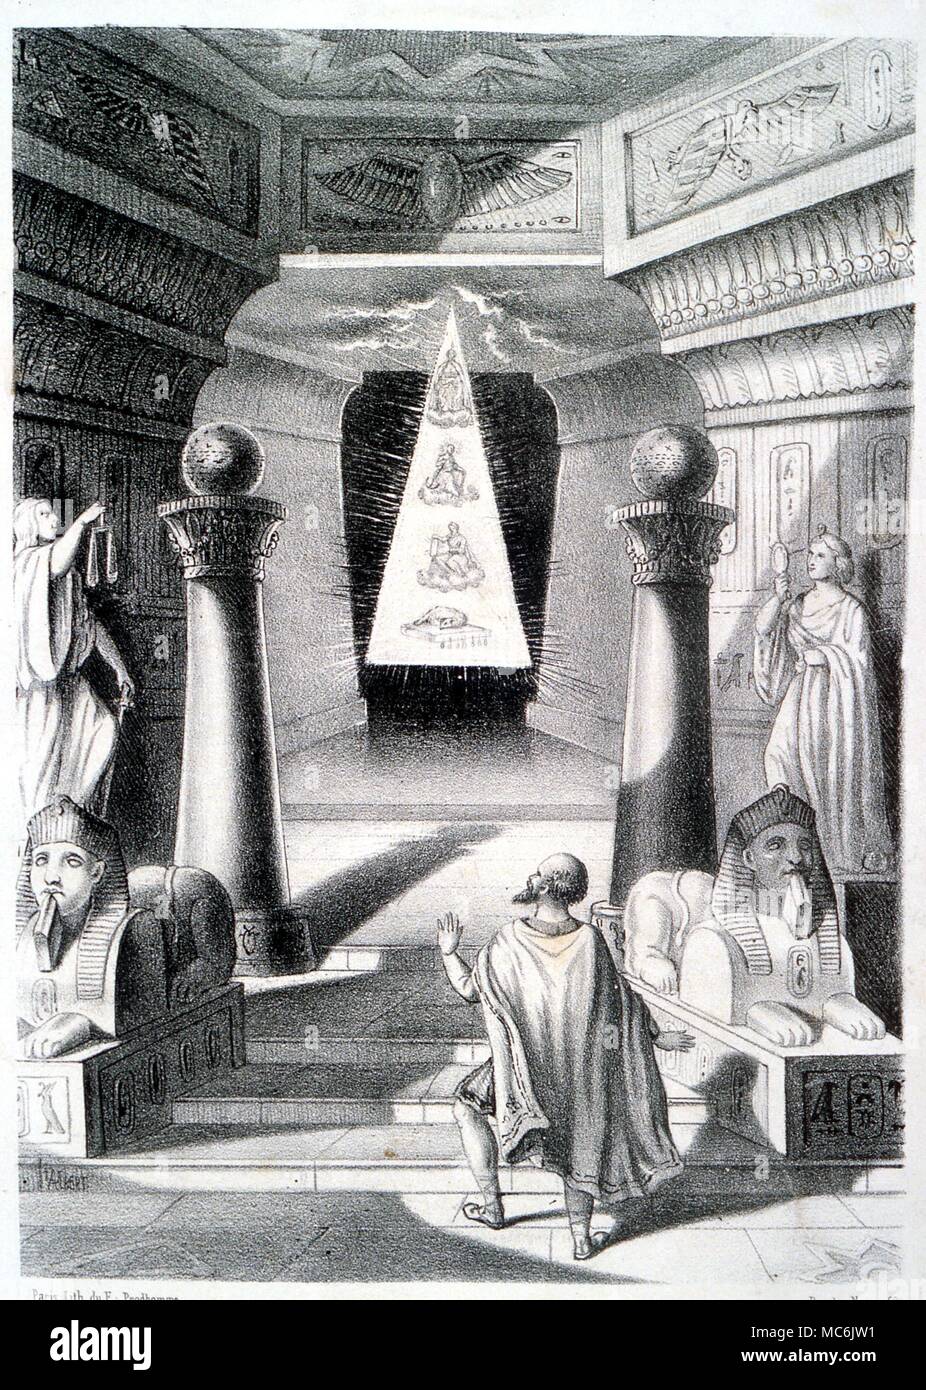 Les DEUX COLONNES DE MAÇONNERIE ET TRIANGLE. Lithographie montrant les  symboles ésotériques de la maçonnerie, y compris les deux colonnes de la  façade du temple de Salomon, et le triangle rayonnant.